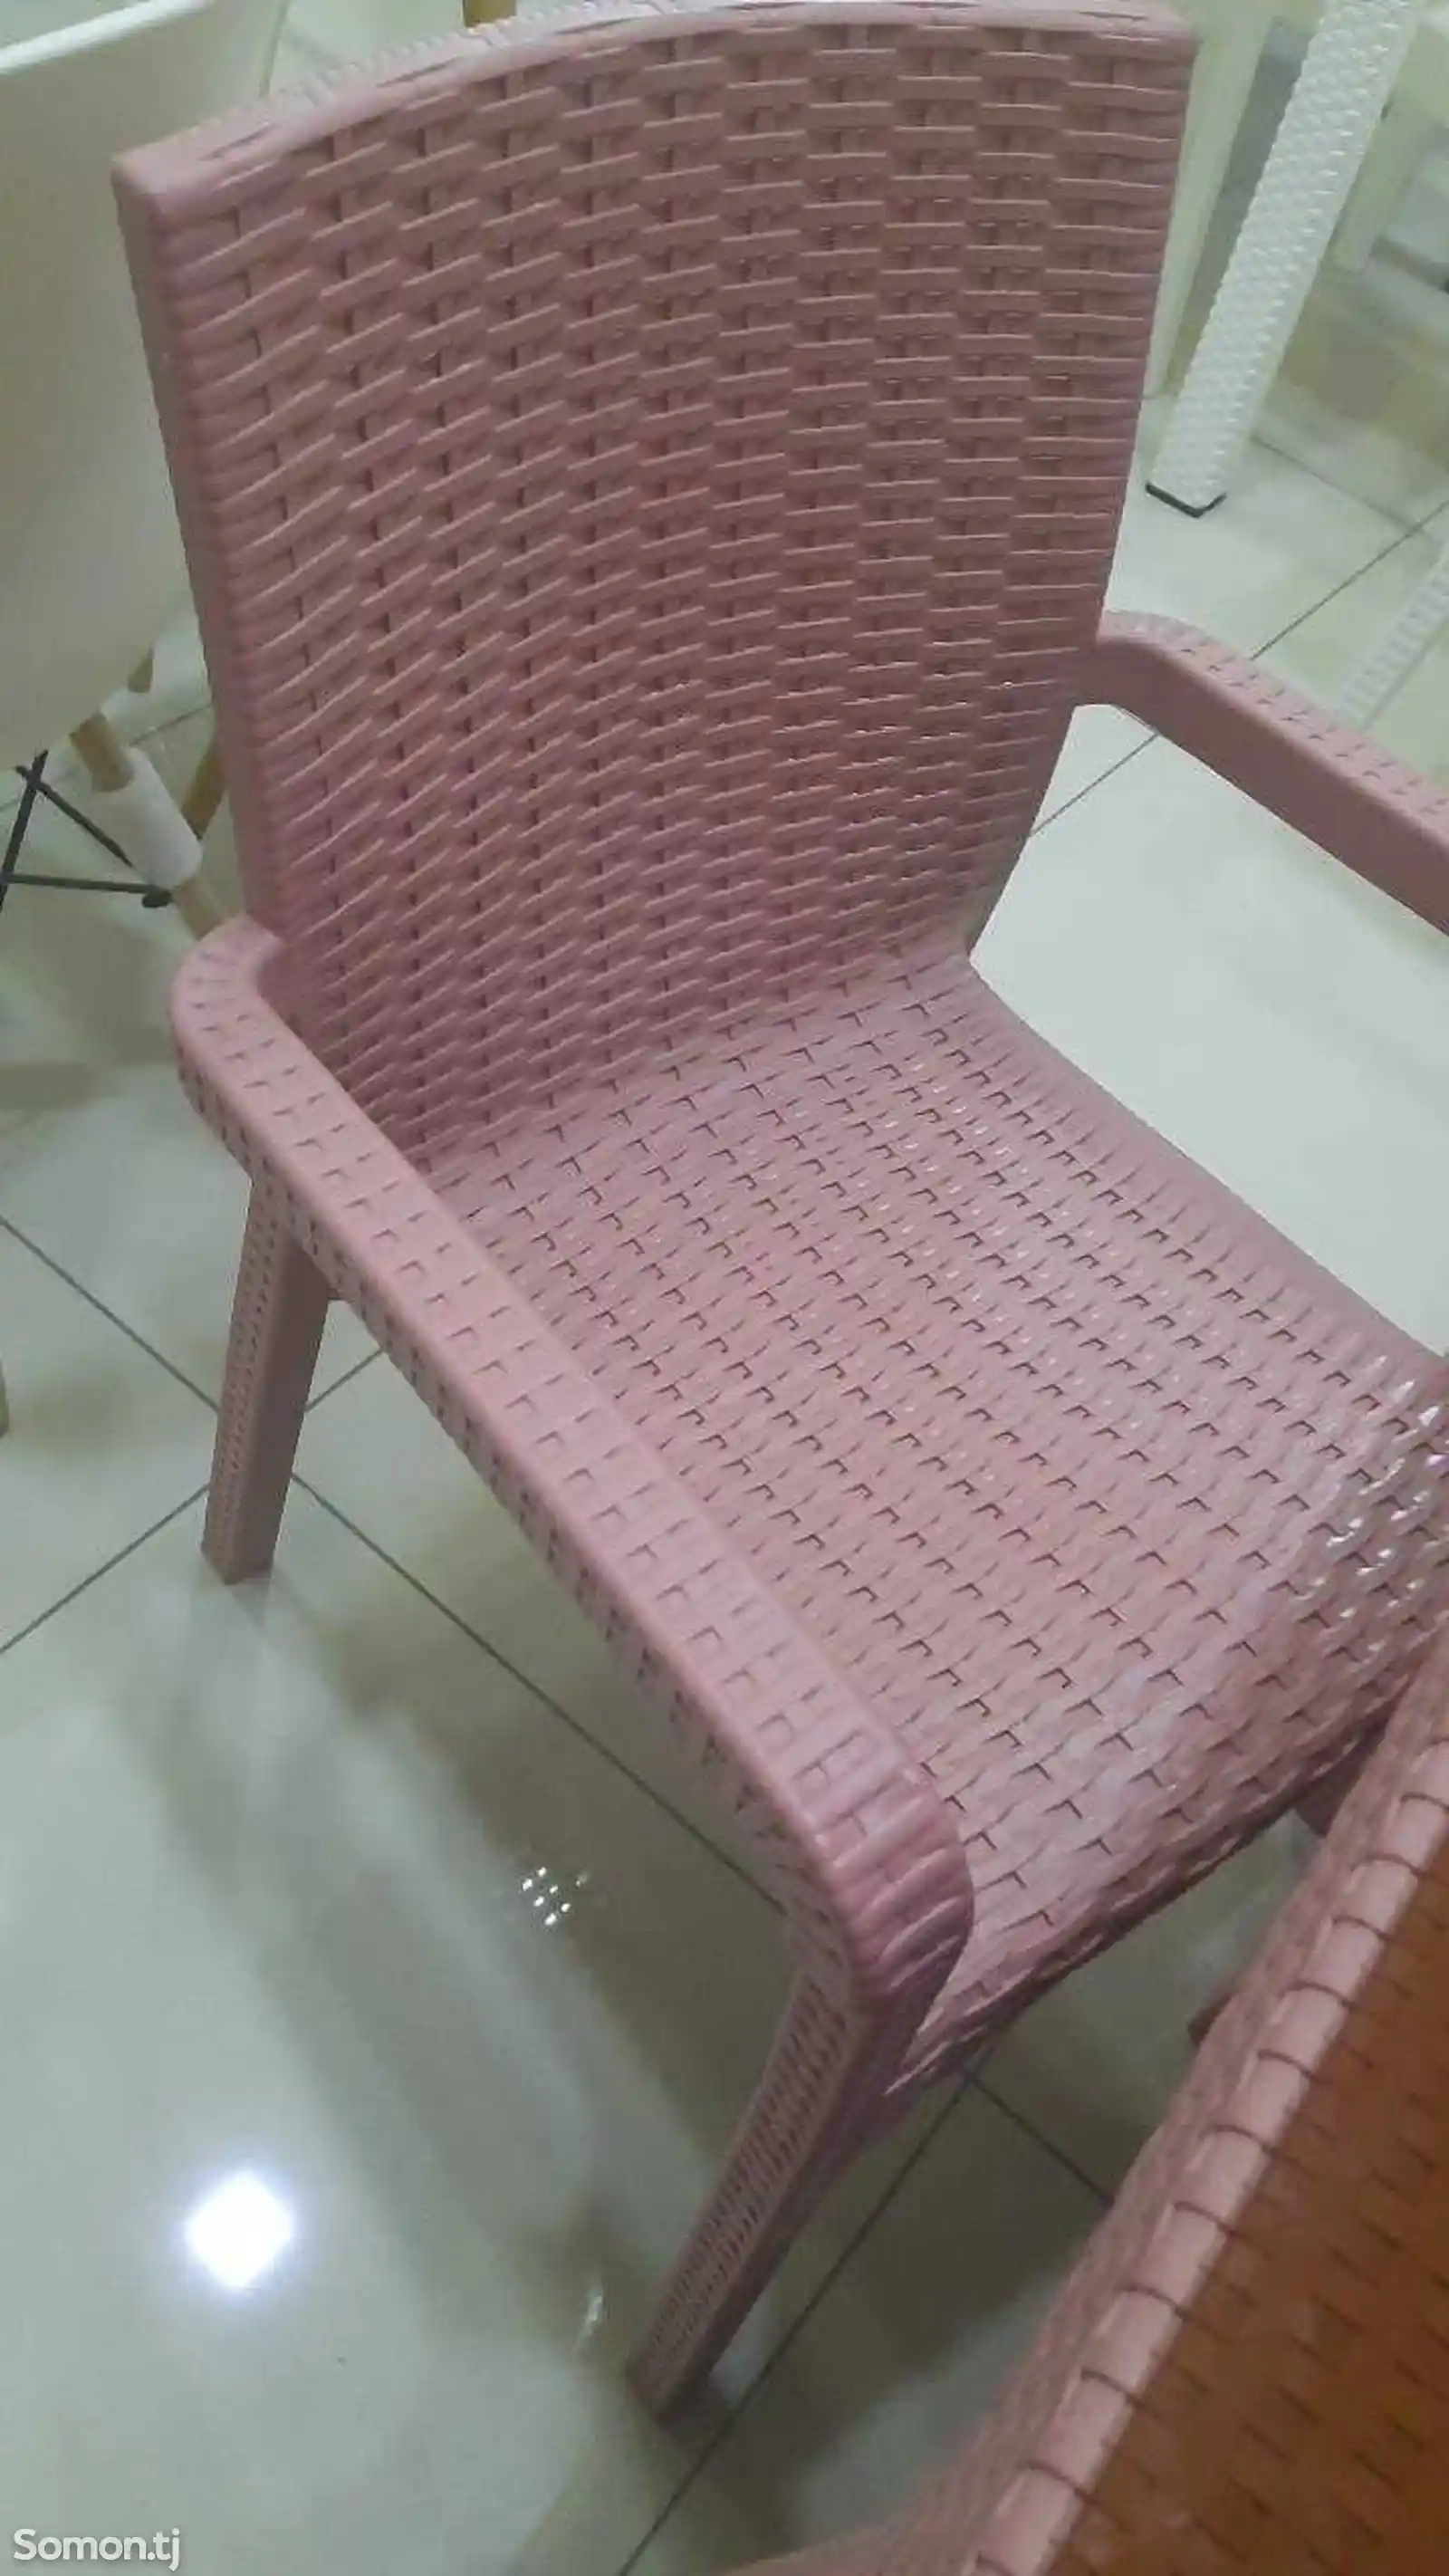 Столы и стулья-4